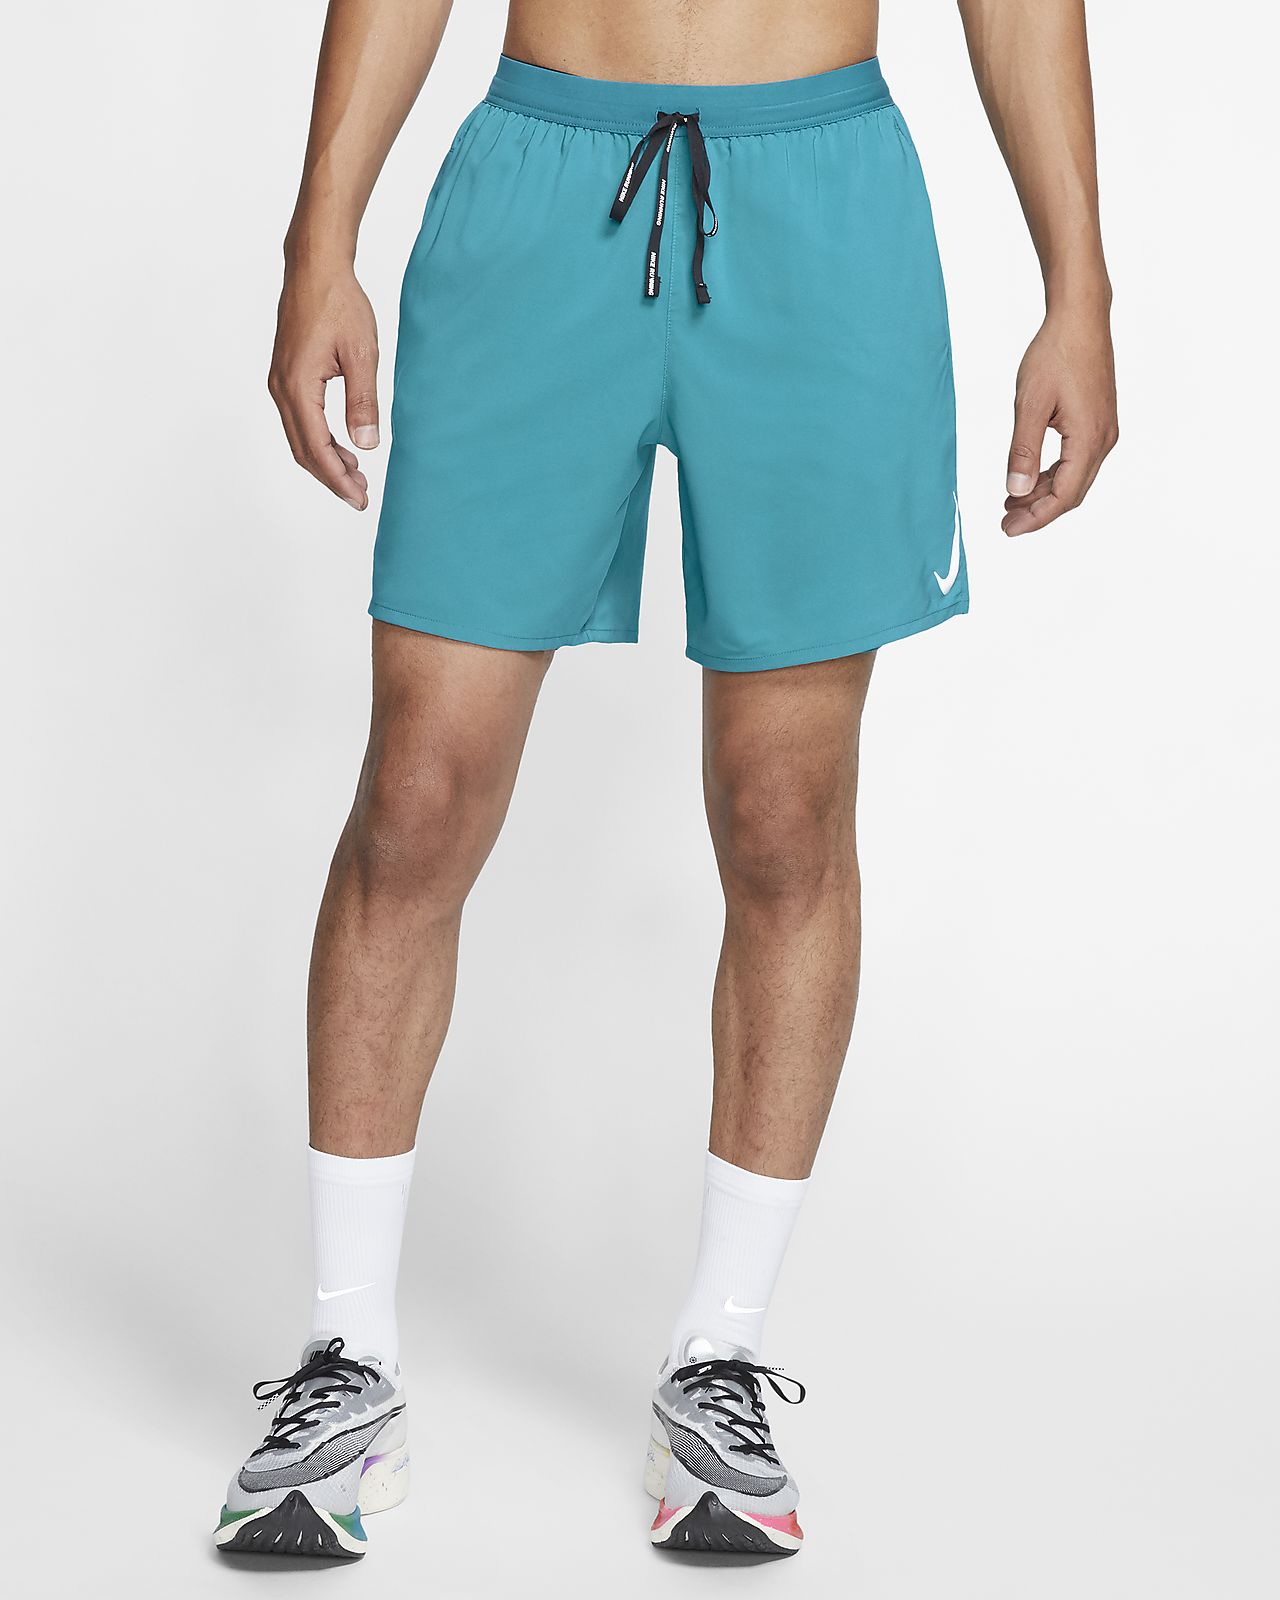 nike men's 7 inch running shorts